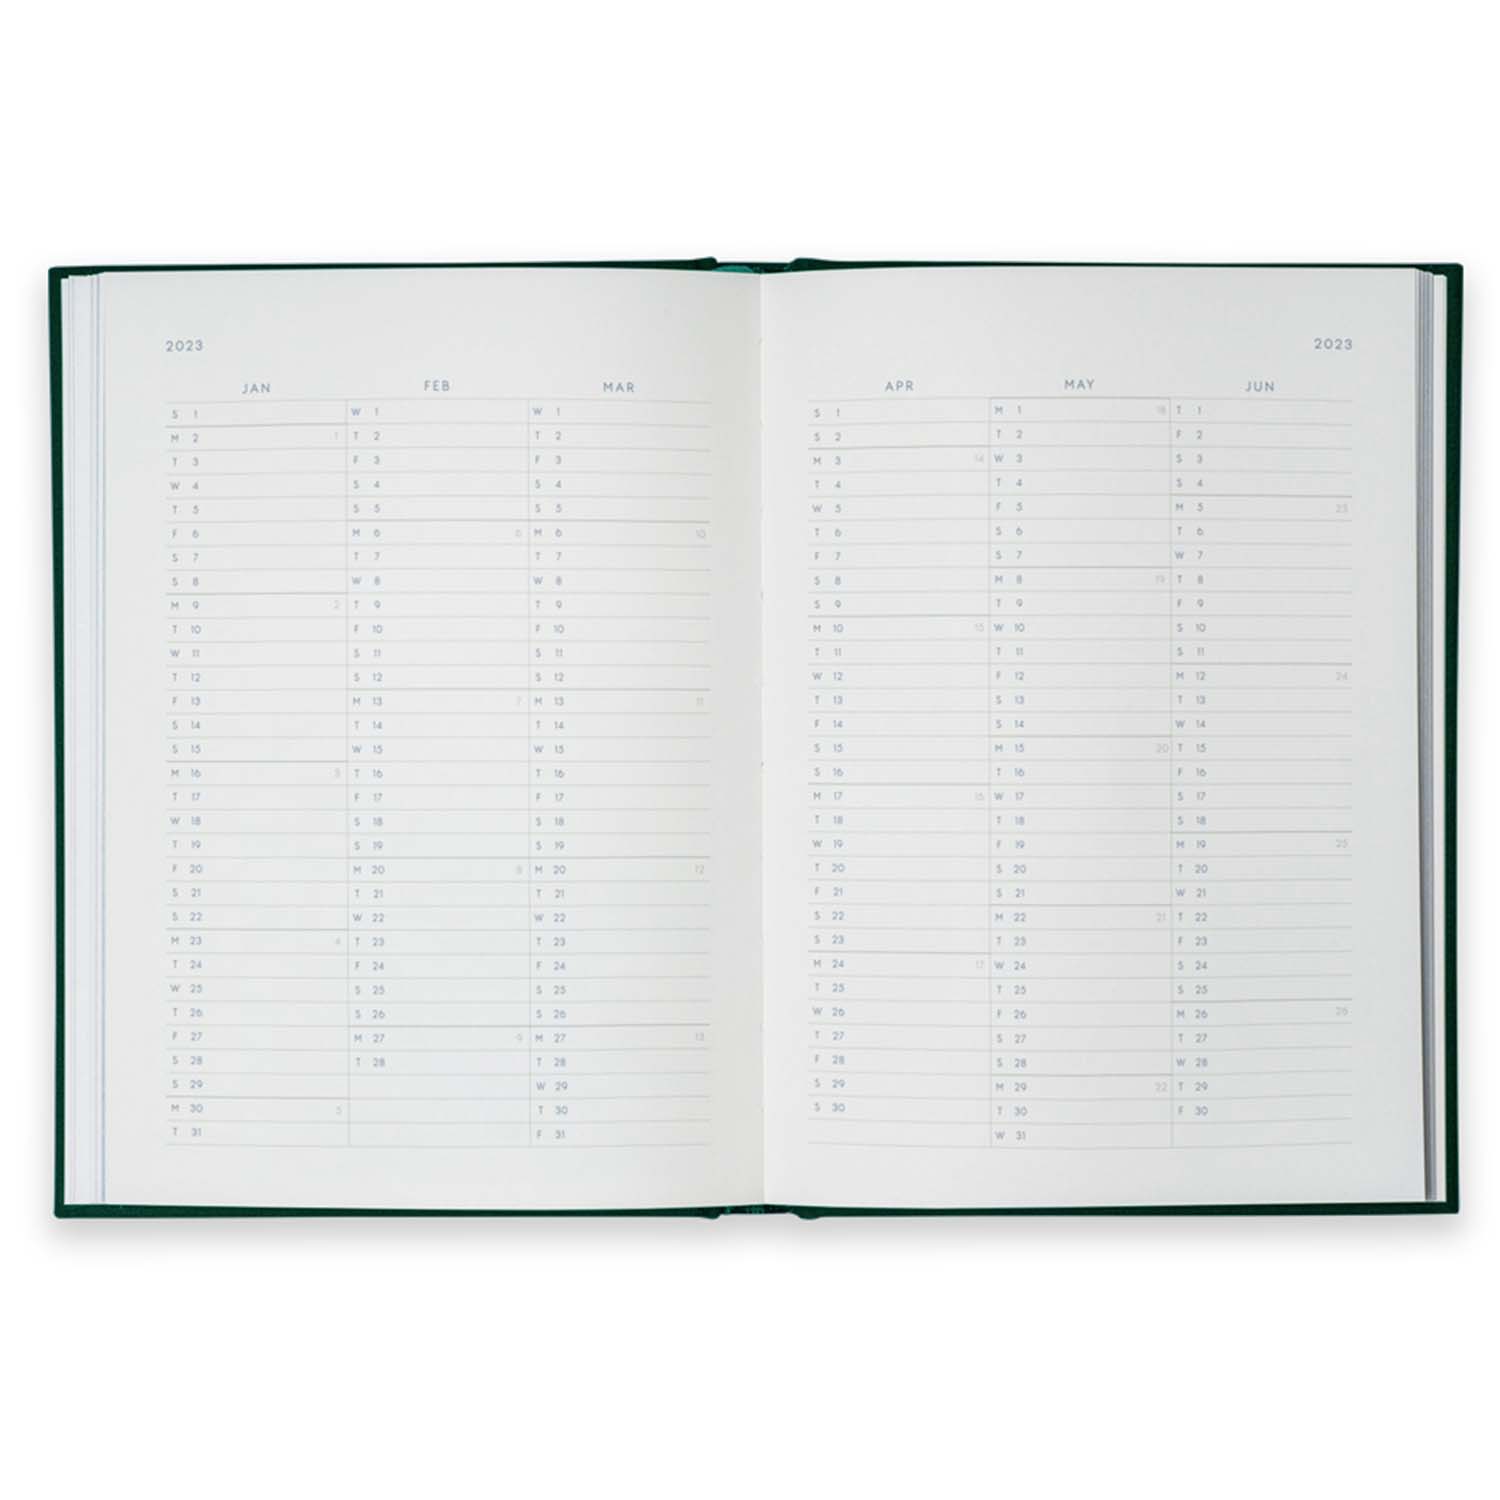 Kartotek Capenhagen - Notebook Calendar 2023 - NC-0006 - Inside pages 2